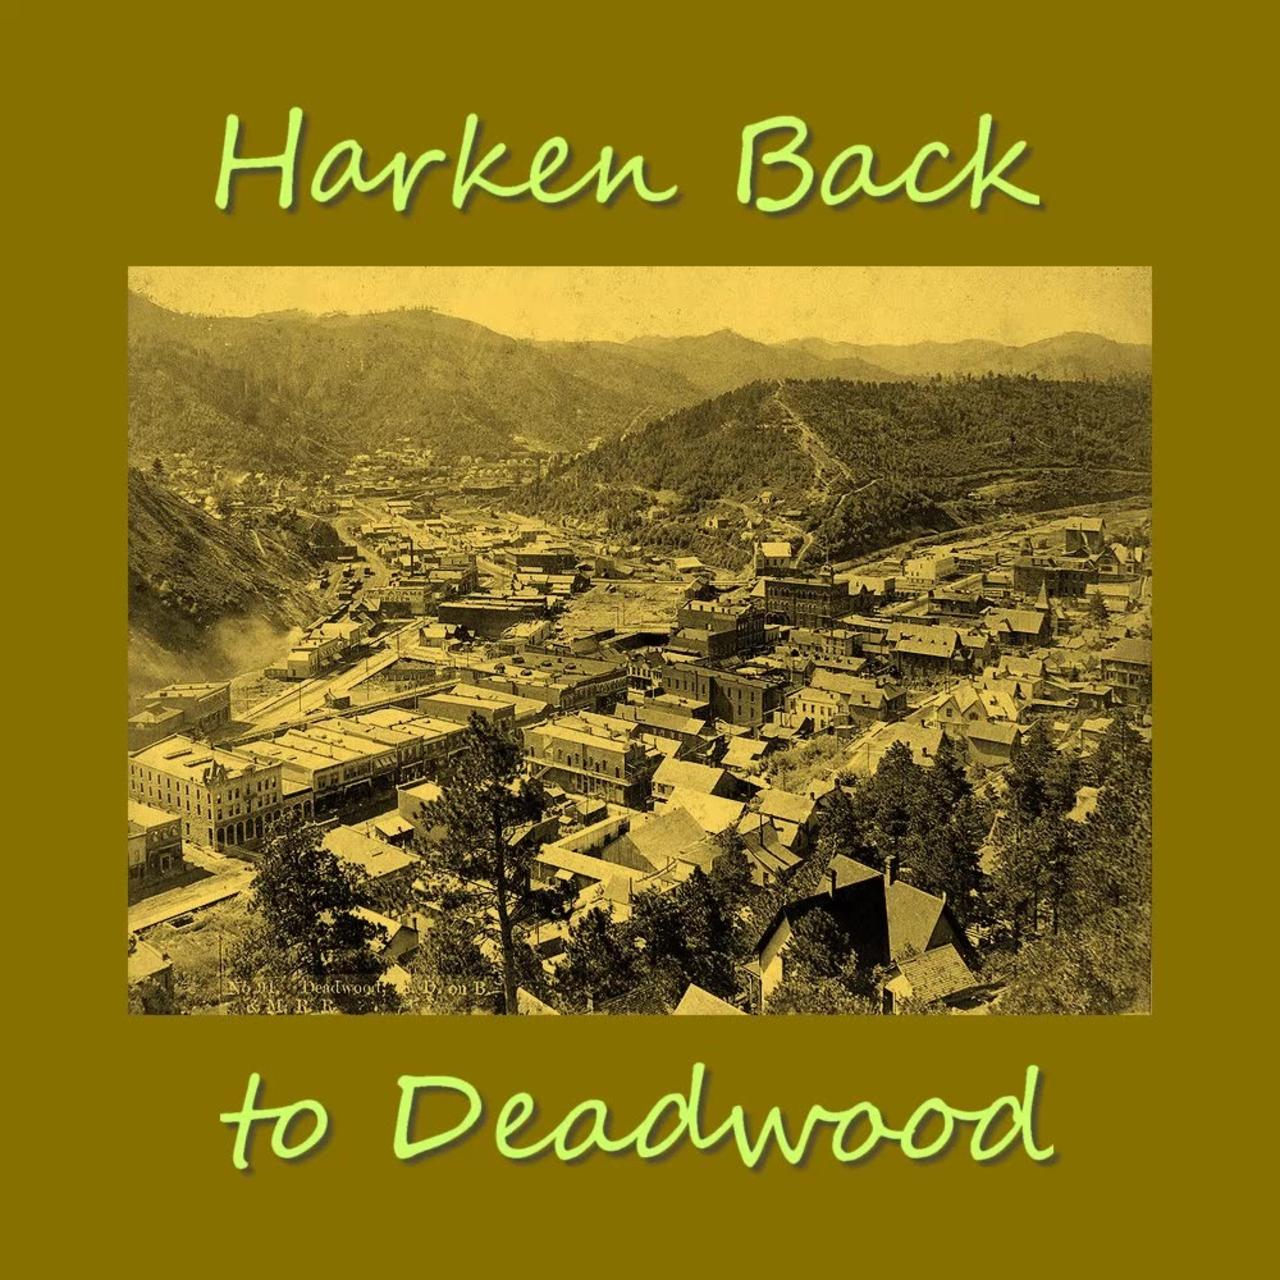 Harken Back to Deadwood